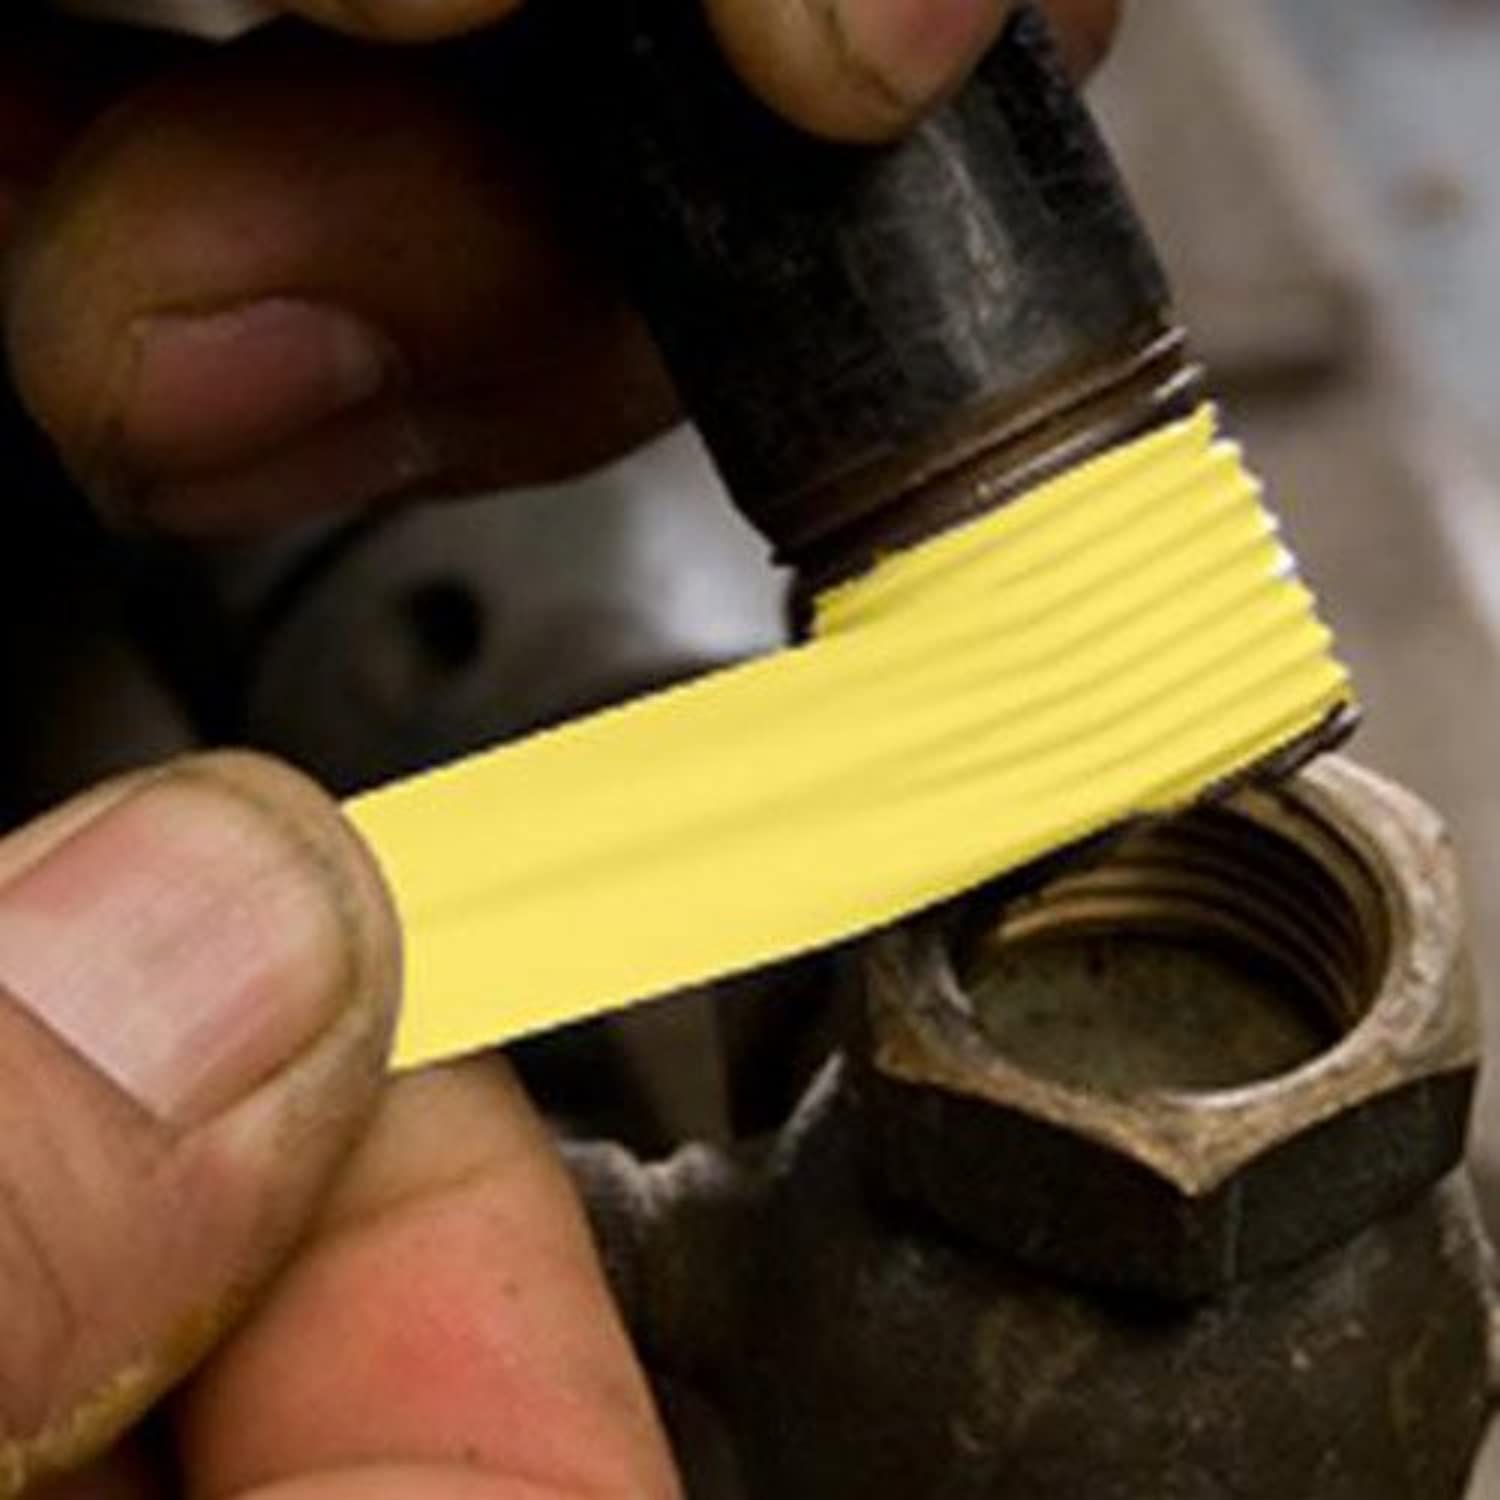 LA-CO 44094 Slic-Tite PTFE Gas Line Pipe Thread Tape, Premium Grade, [260" Length, 1/2" Wide], Yellow